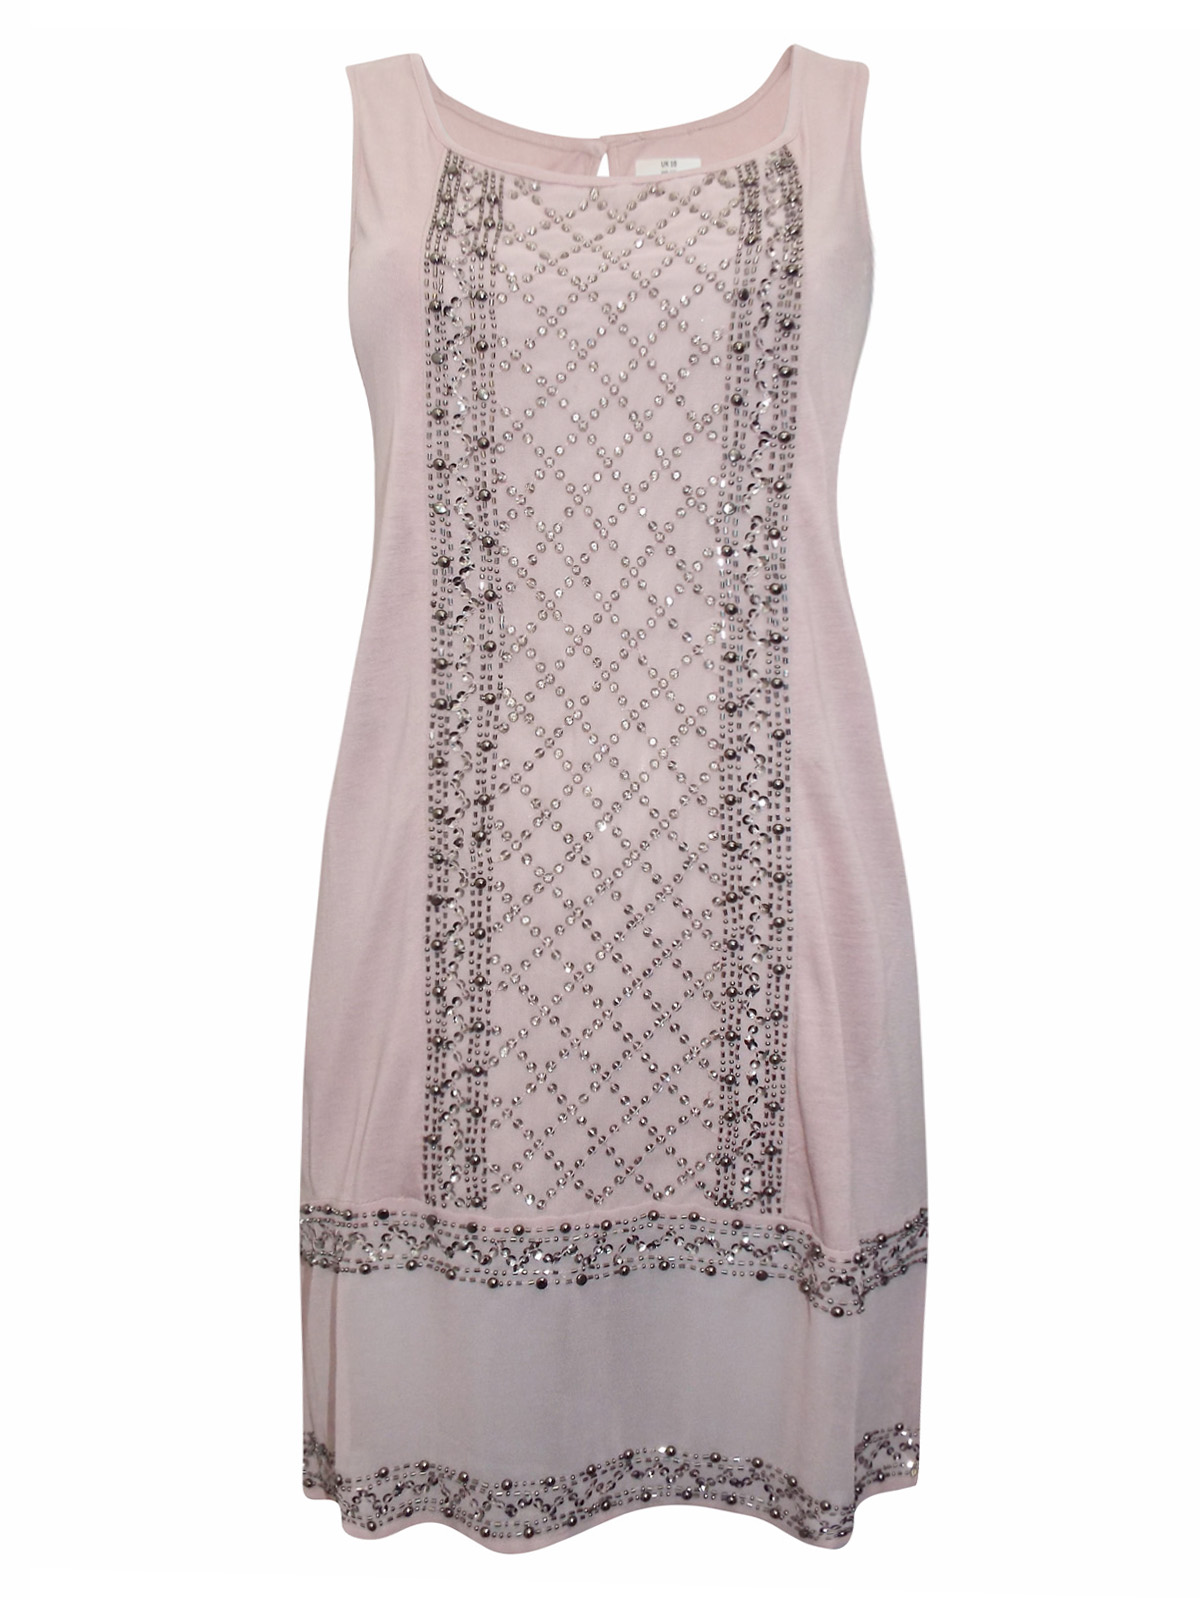 N3XT BLUSH Sleeveless Bead & Jewel Embellished Dress - Size 10 to 12